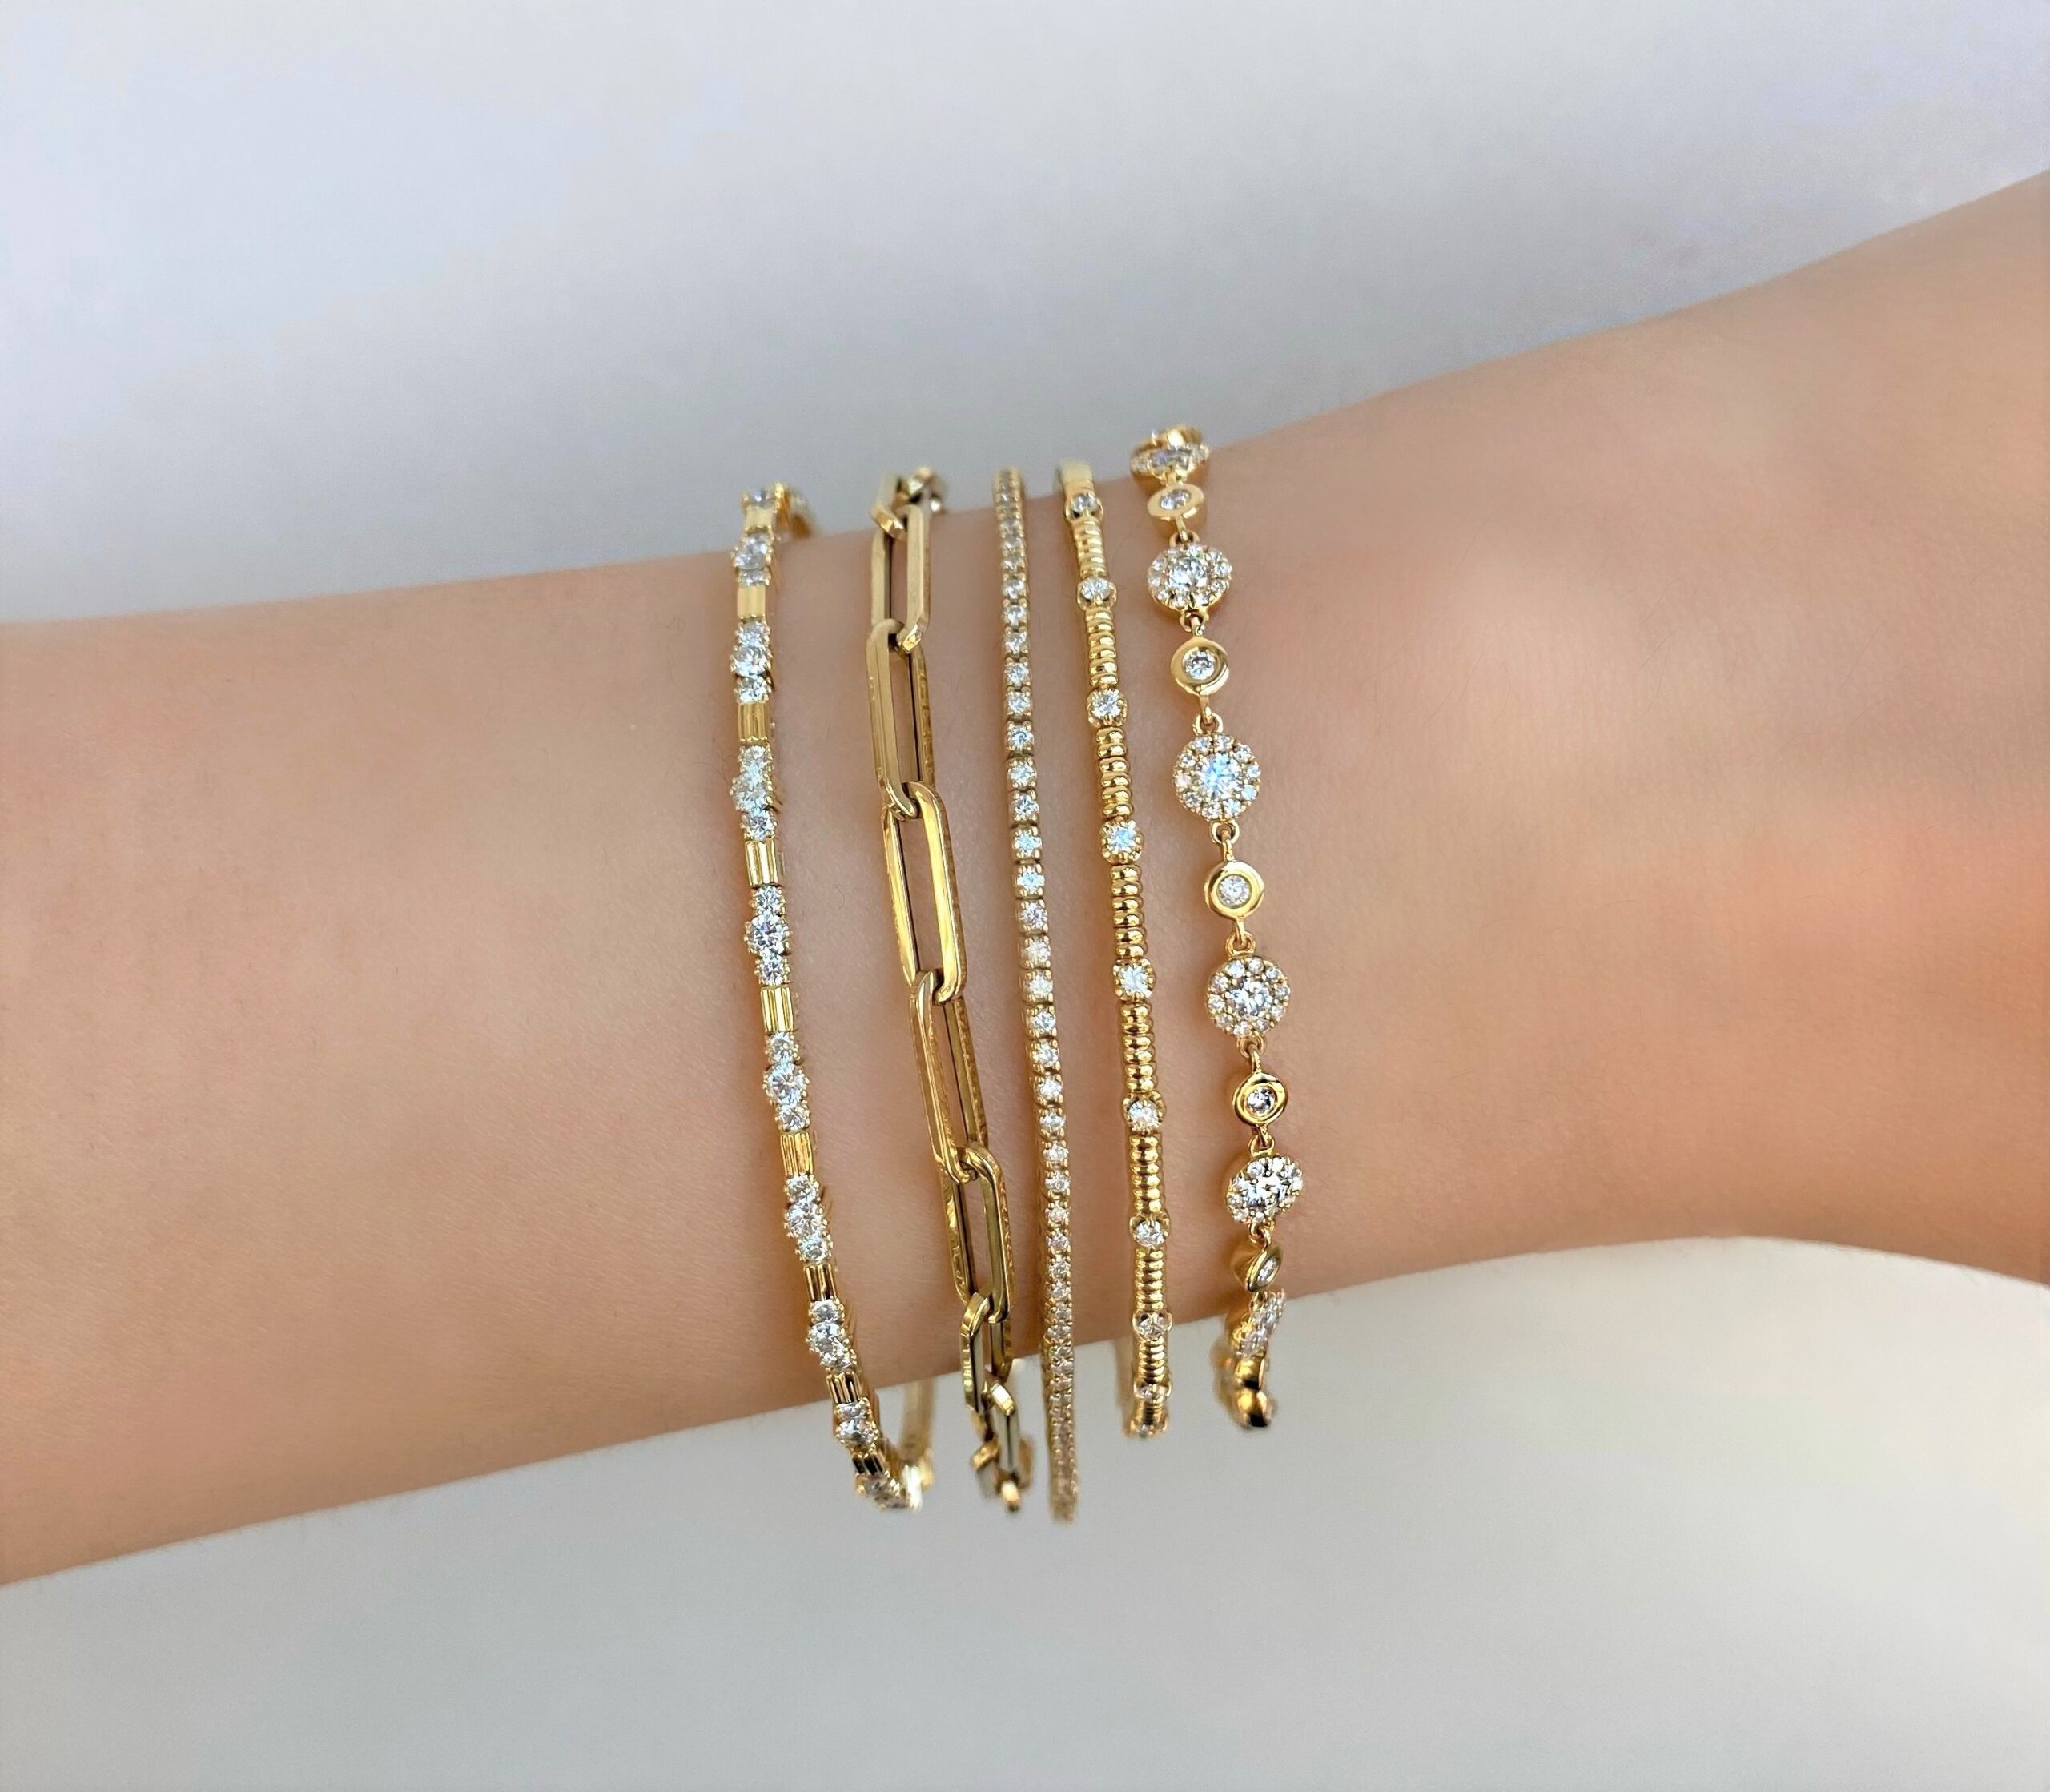 How to Stack Bracelets - Valobra Jewelry